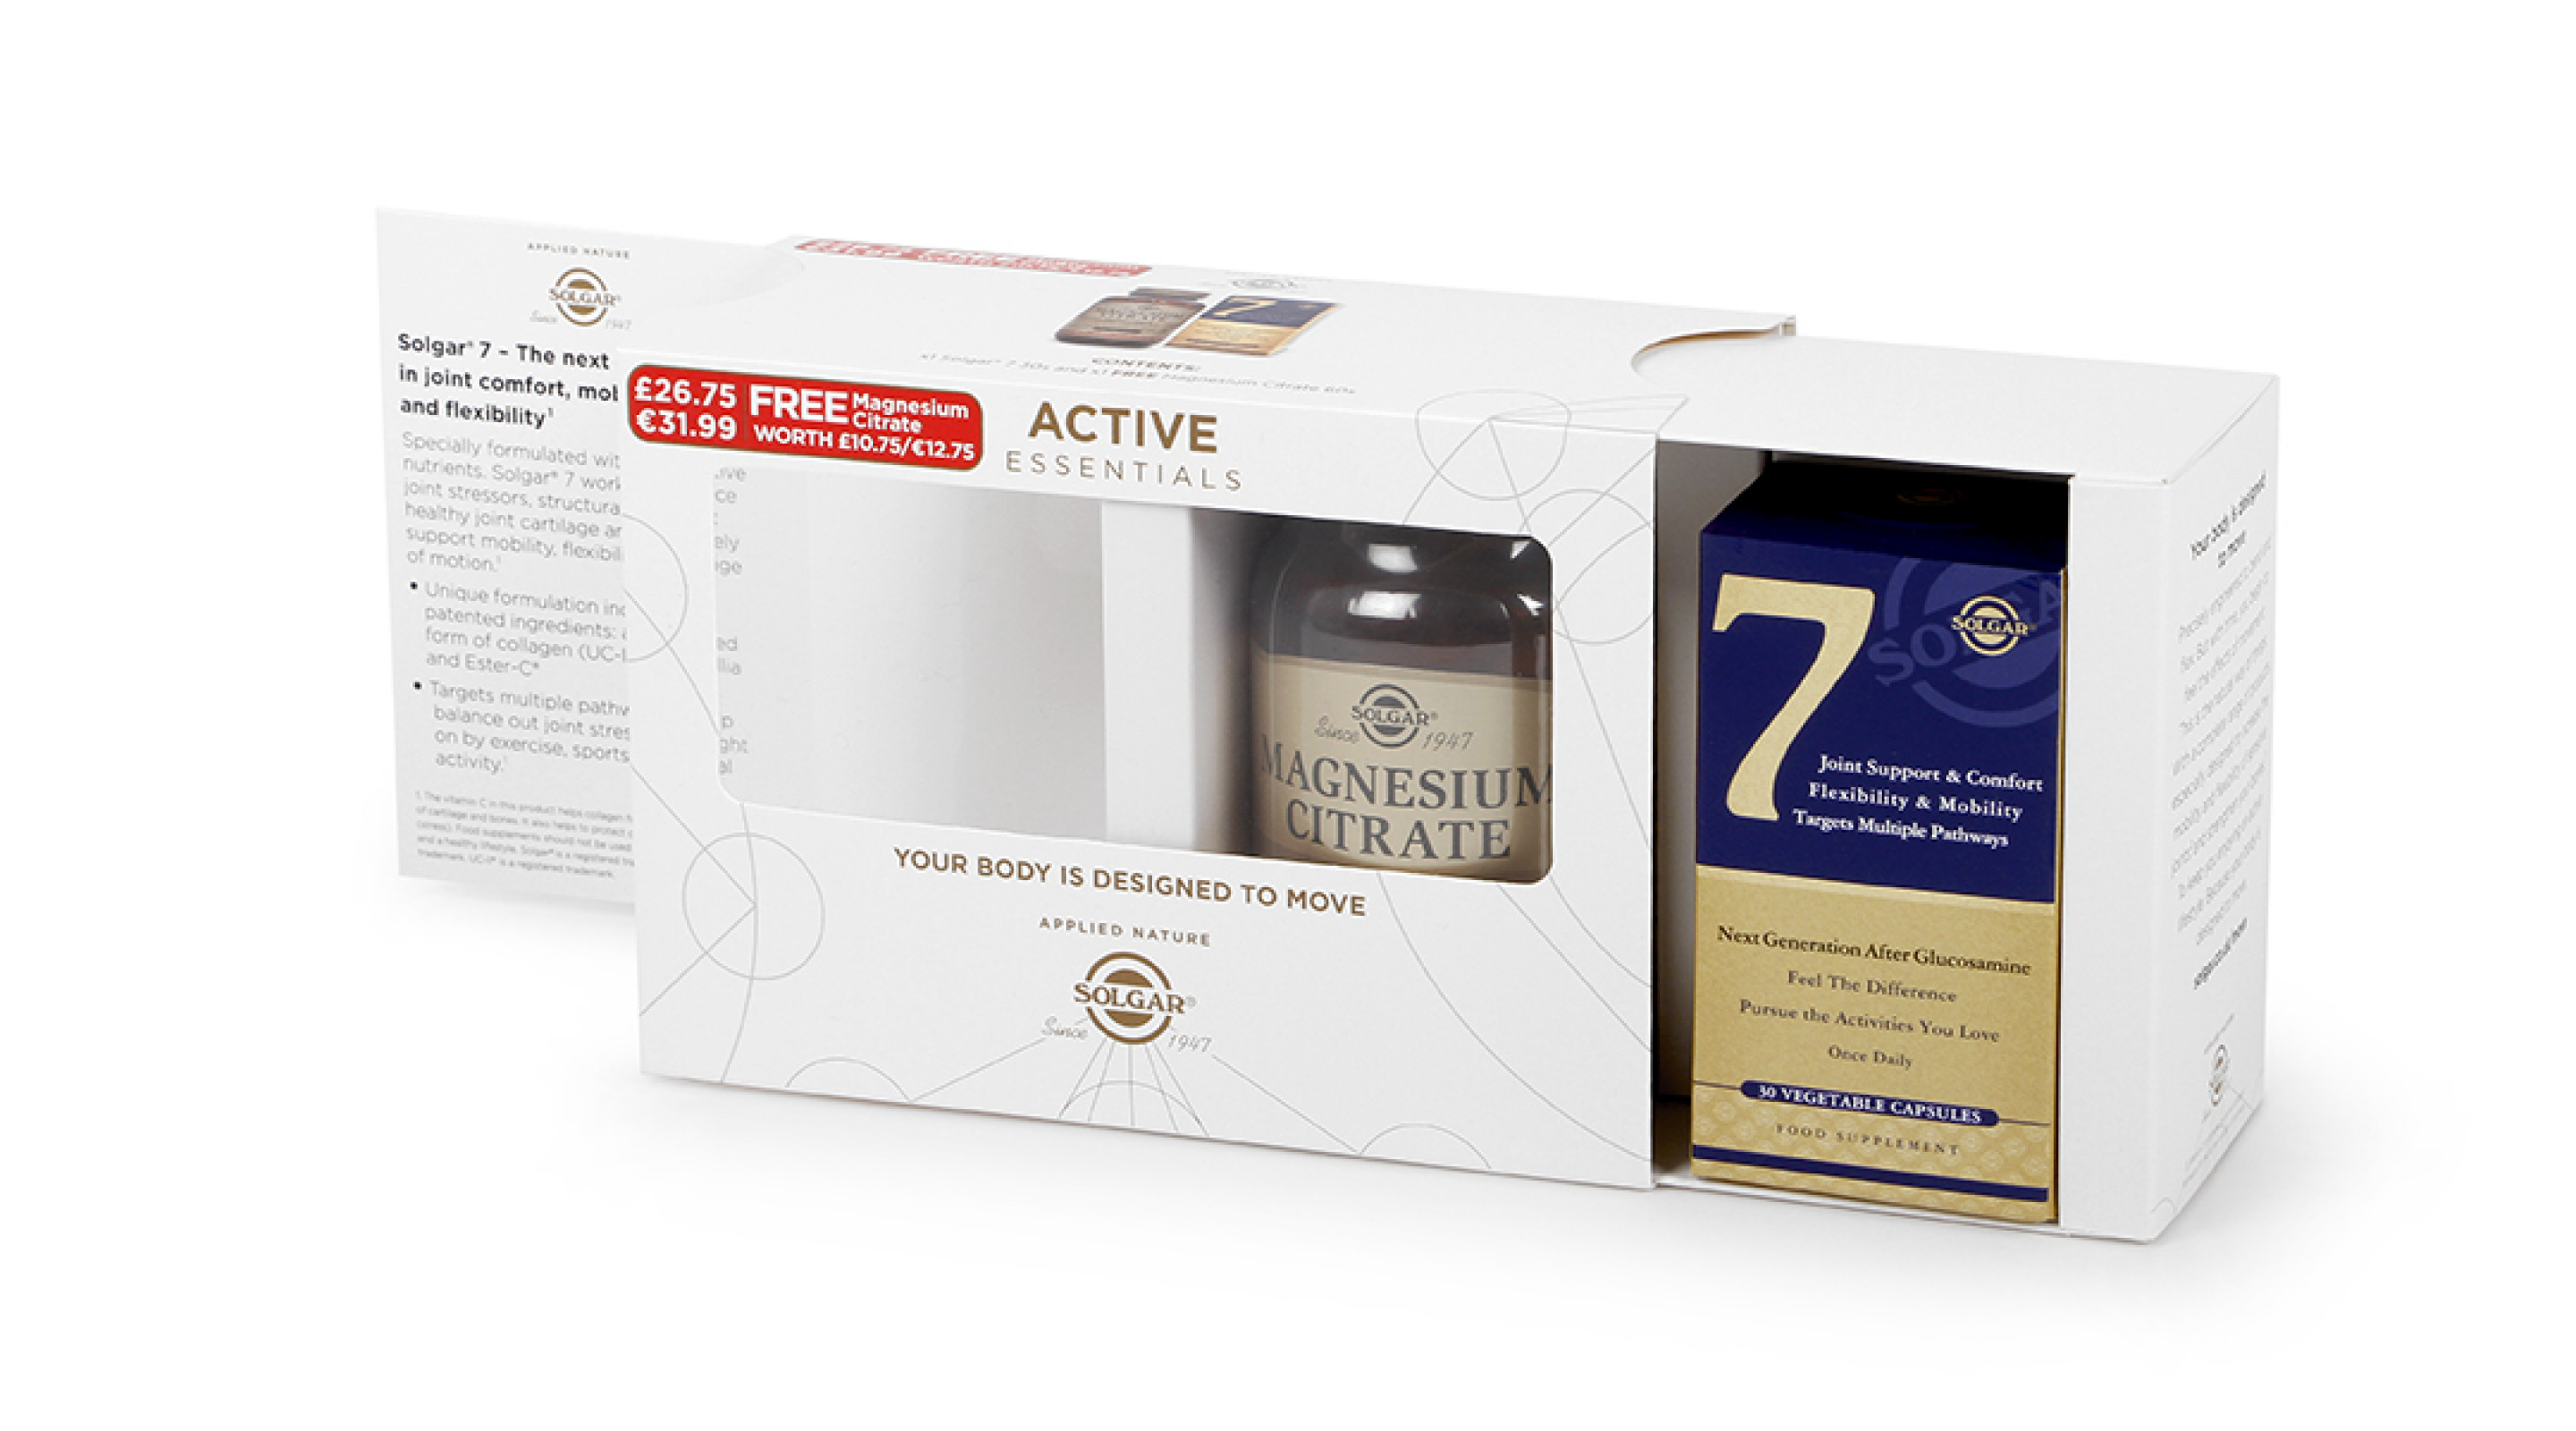 Solgar Active Essentials Supplements Bundle Packaging Opening